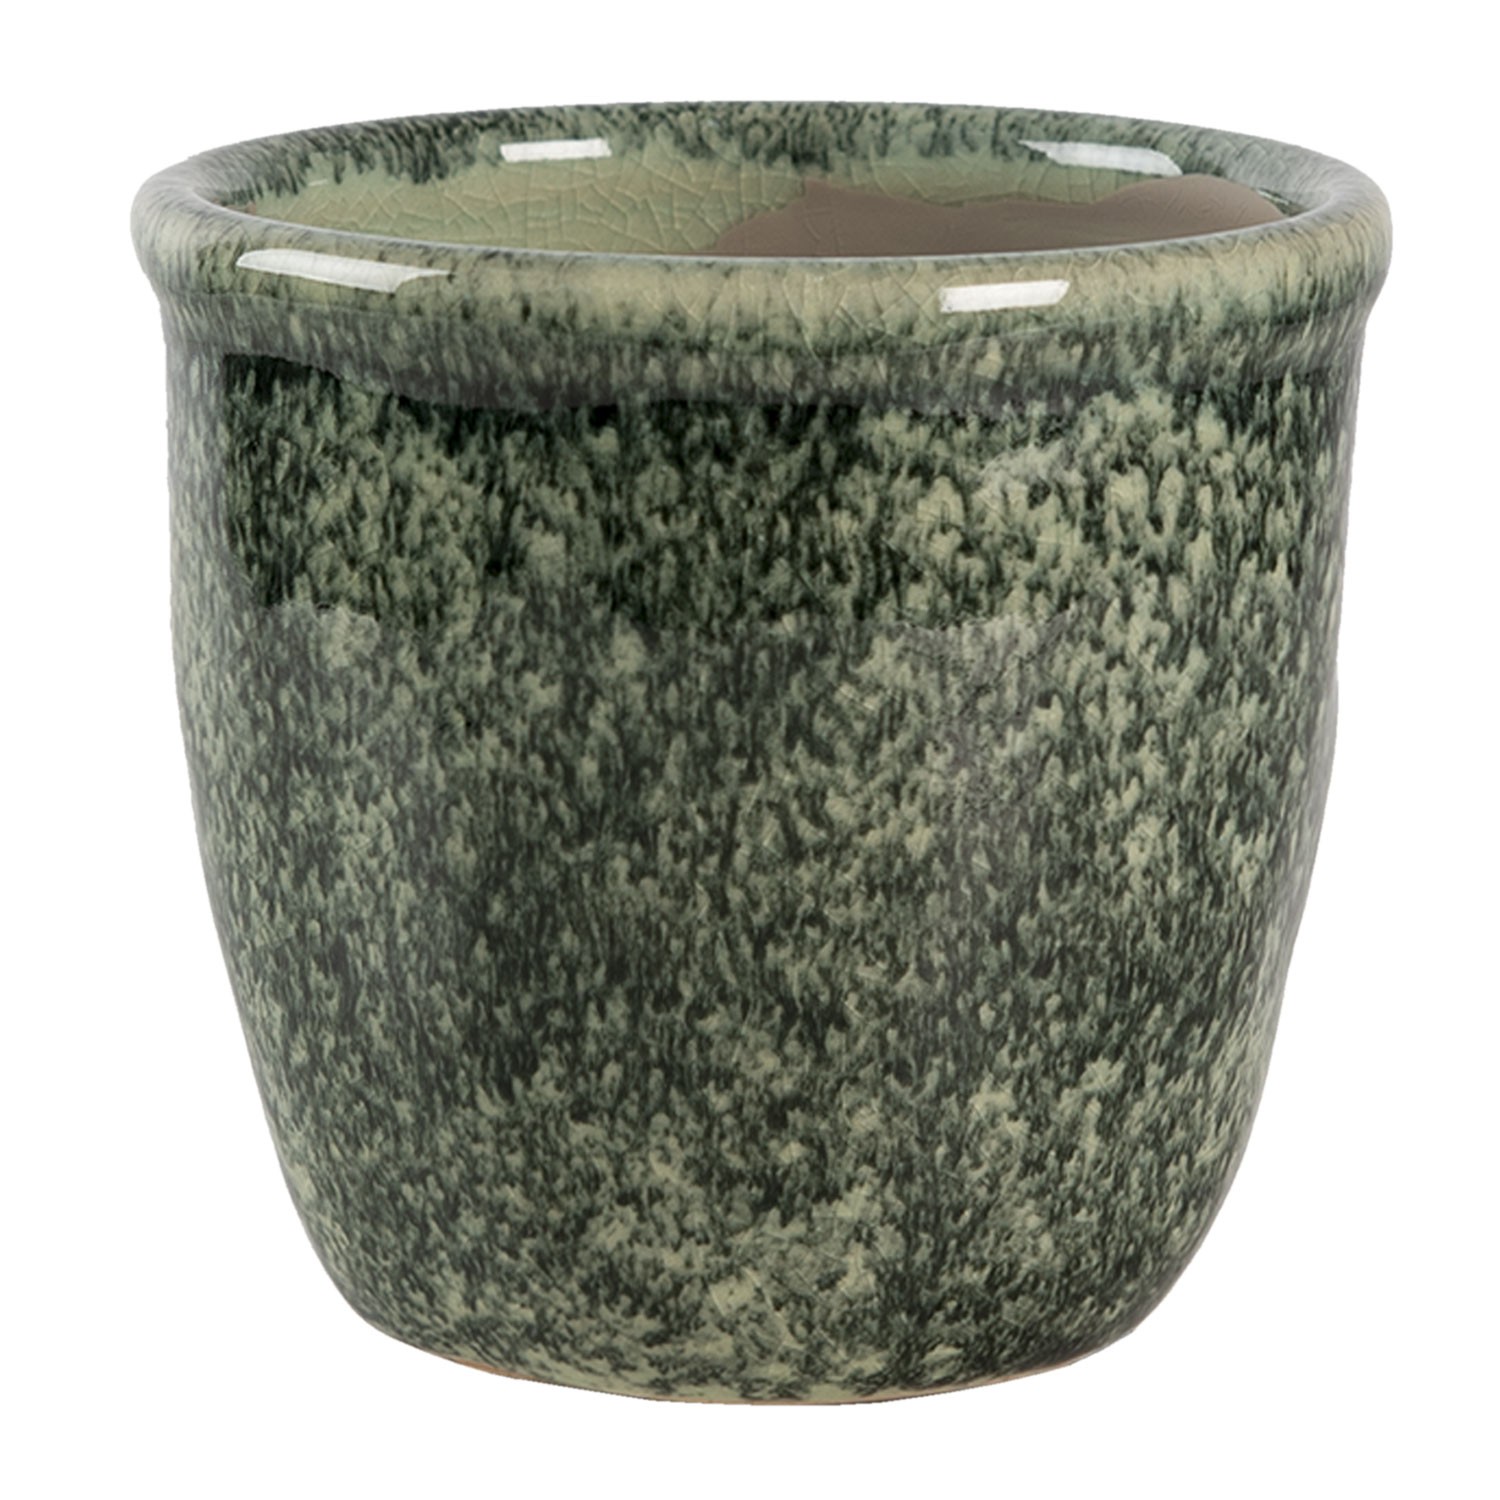 Šedo - zelený mramorovaný obal na květináč S  - Ø 11*10 cm Clayre & Eef